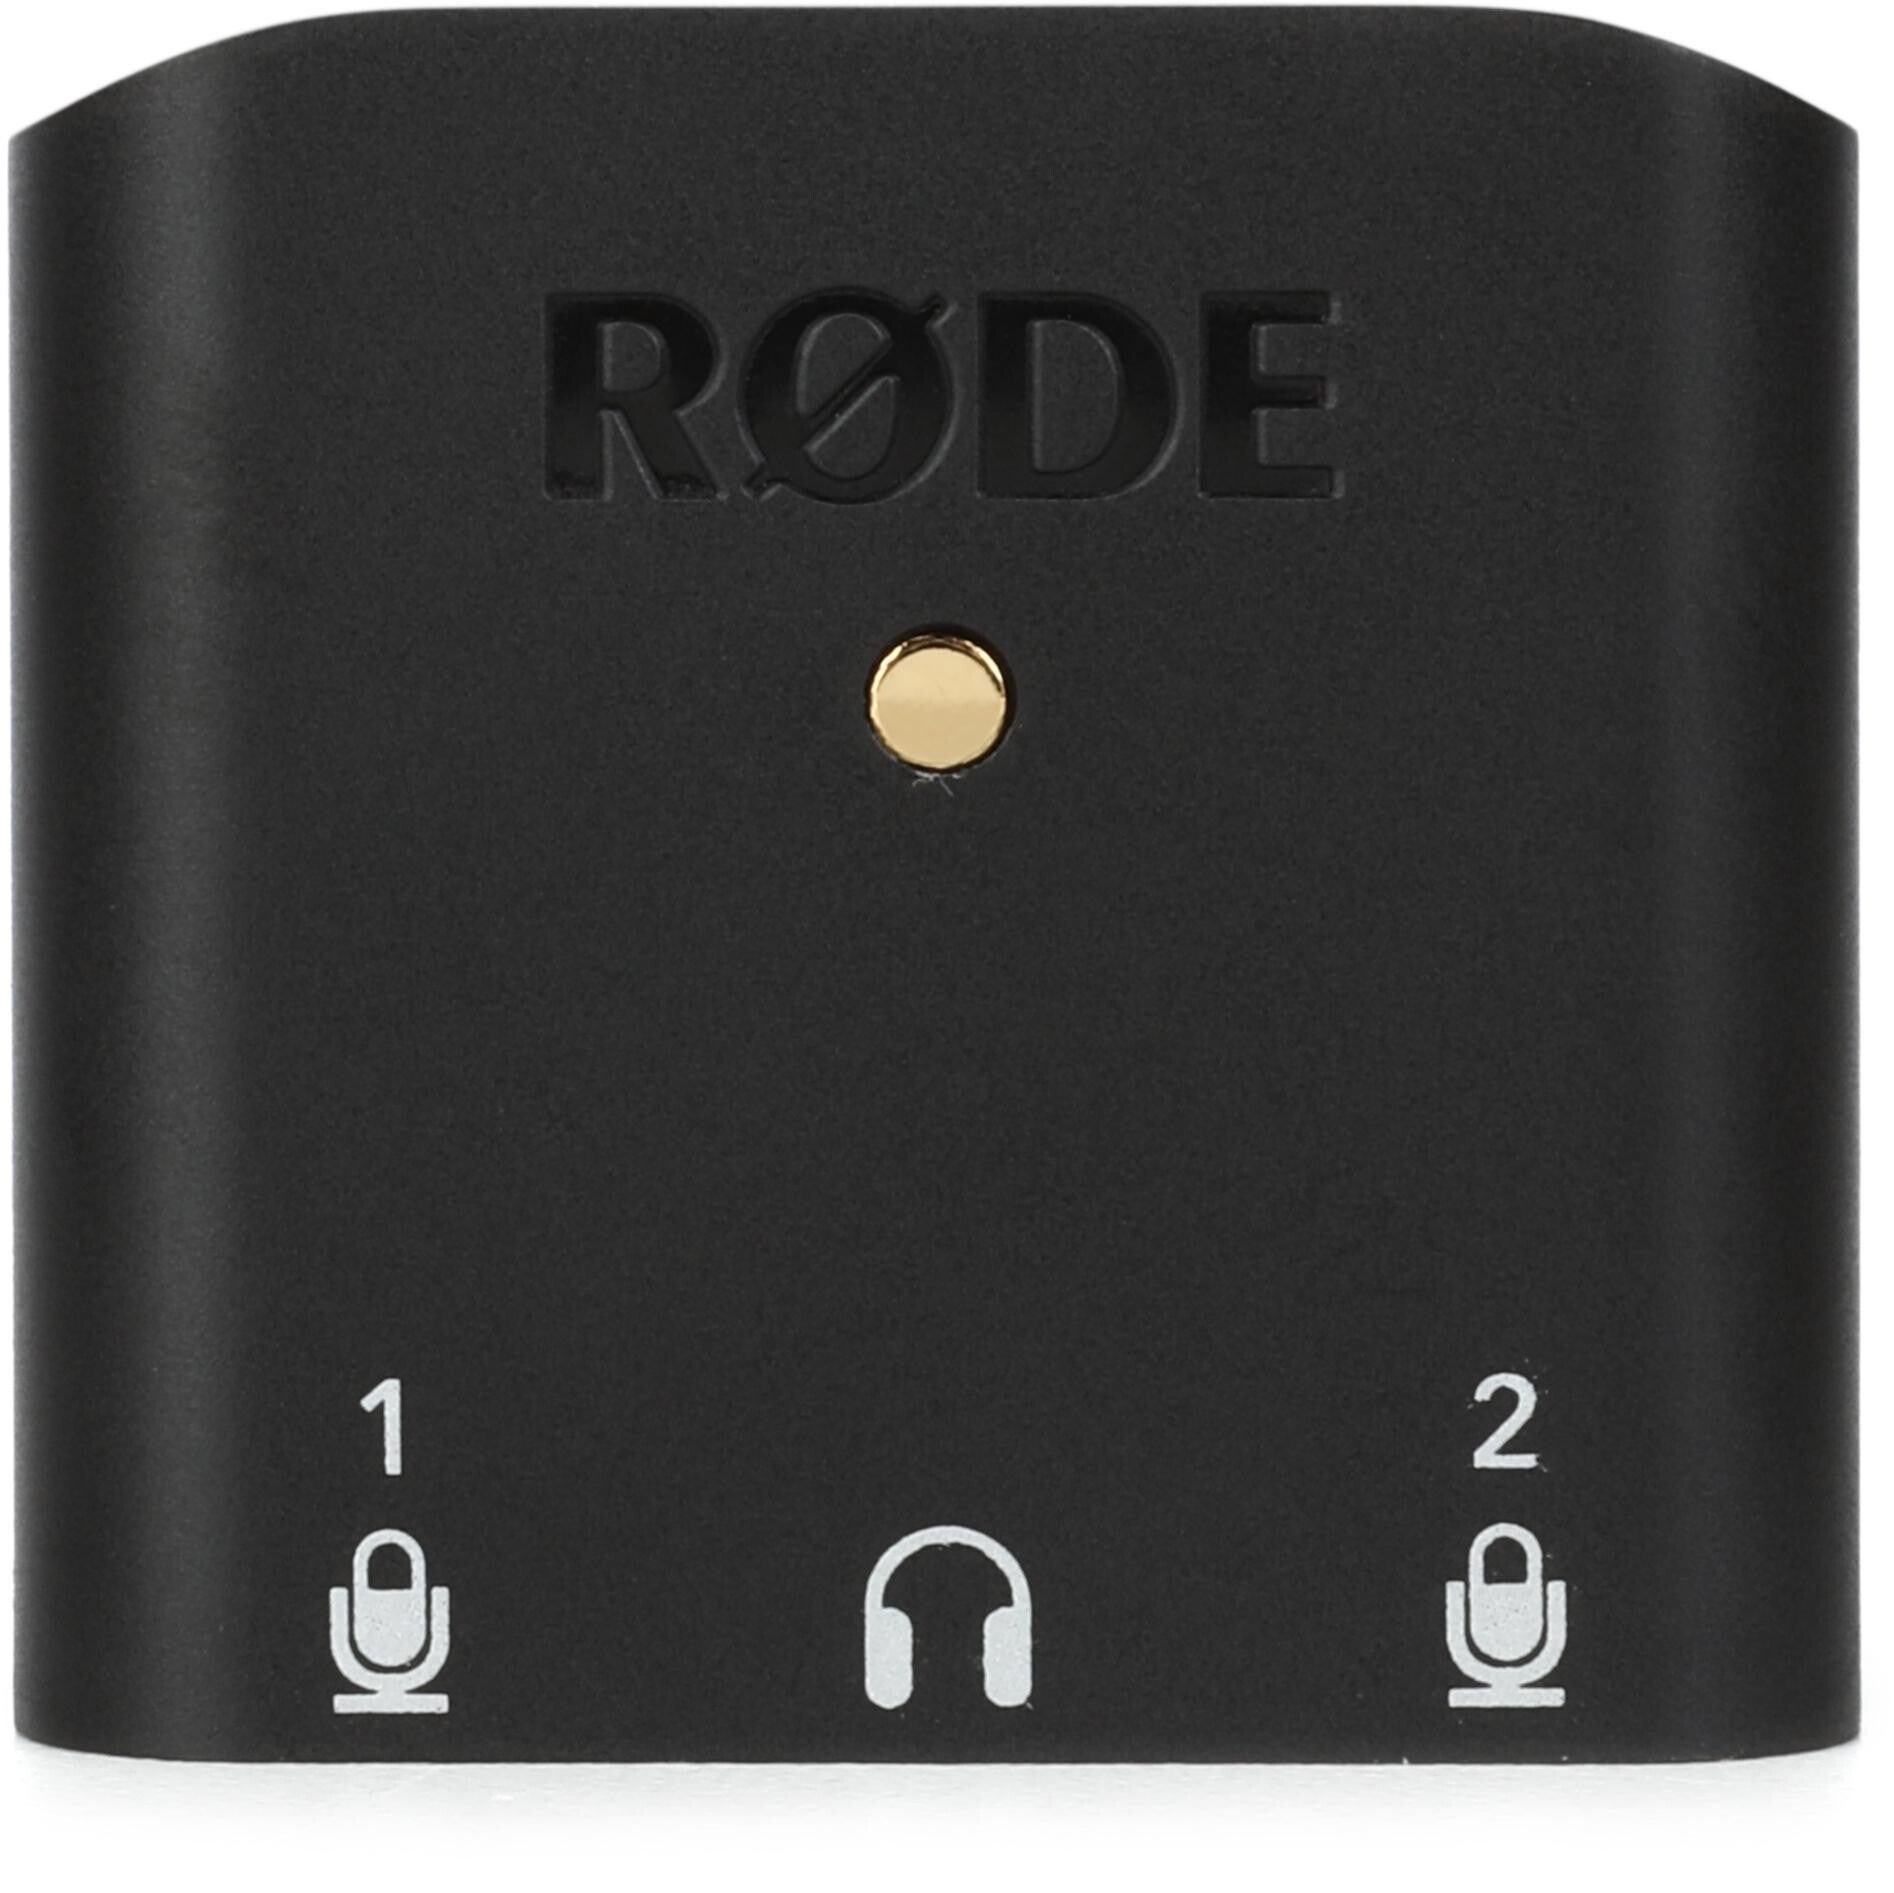 Review: RØDE AI-Micro multiplatform dual channel 48 kHz audio